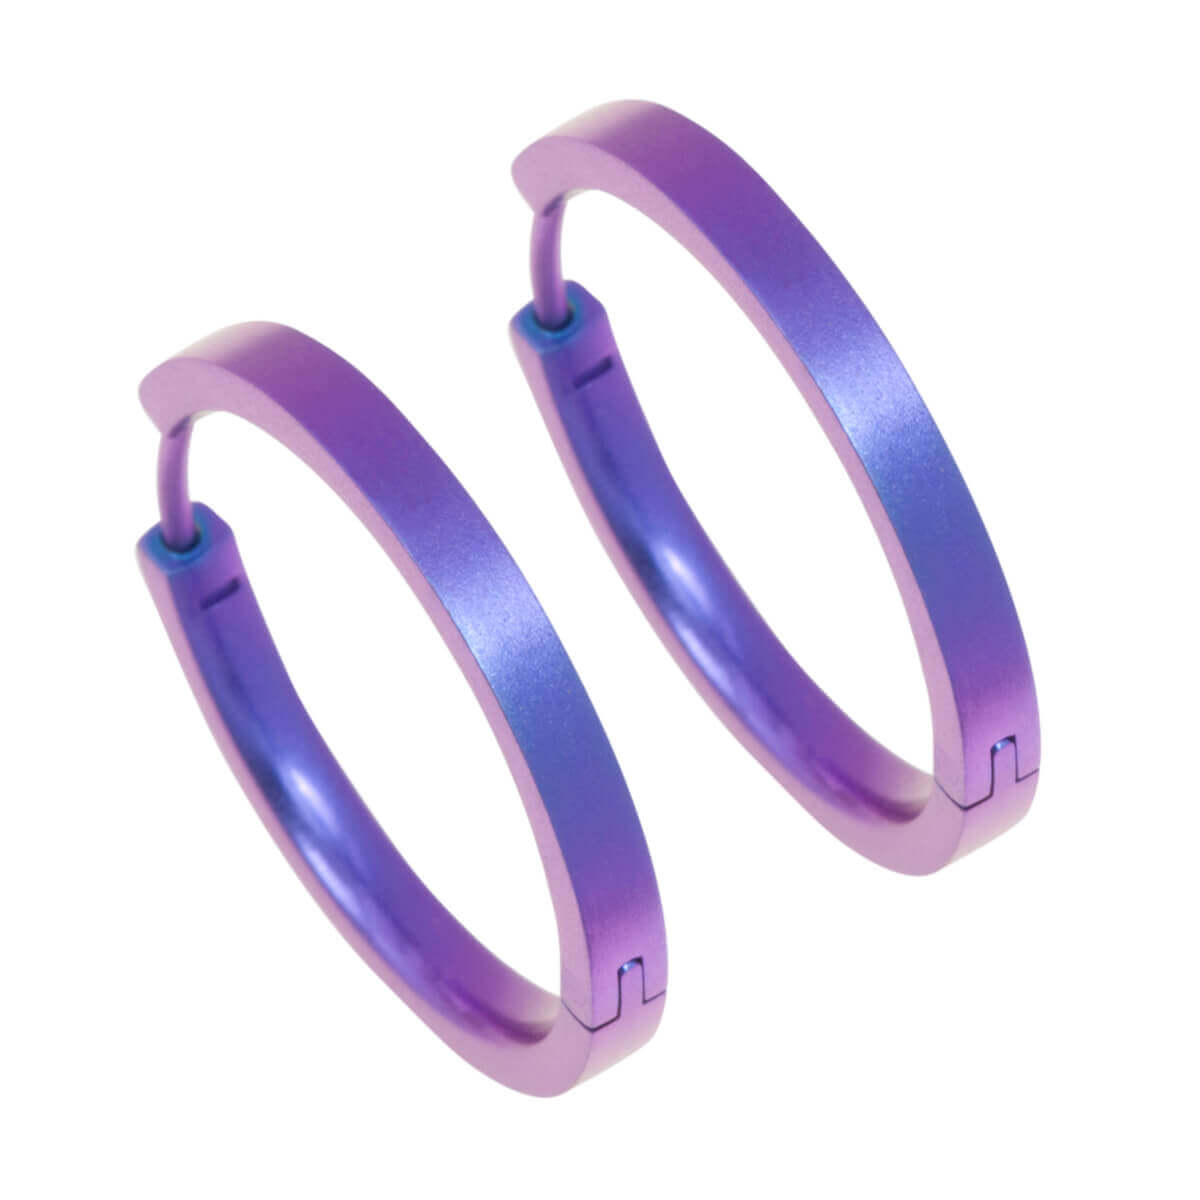 Titanium Medium Hinged Hoop Earrings- Pink/Purple Tones